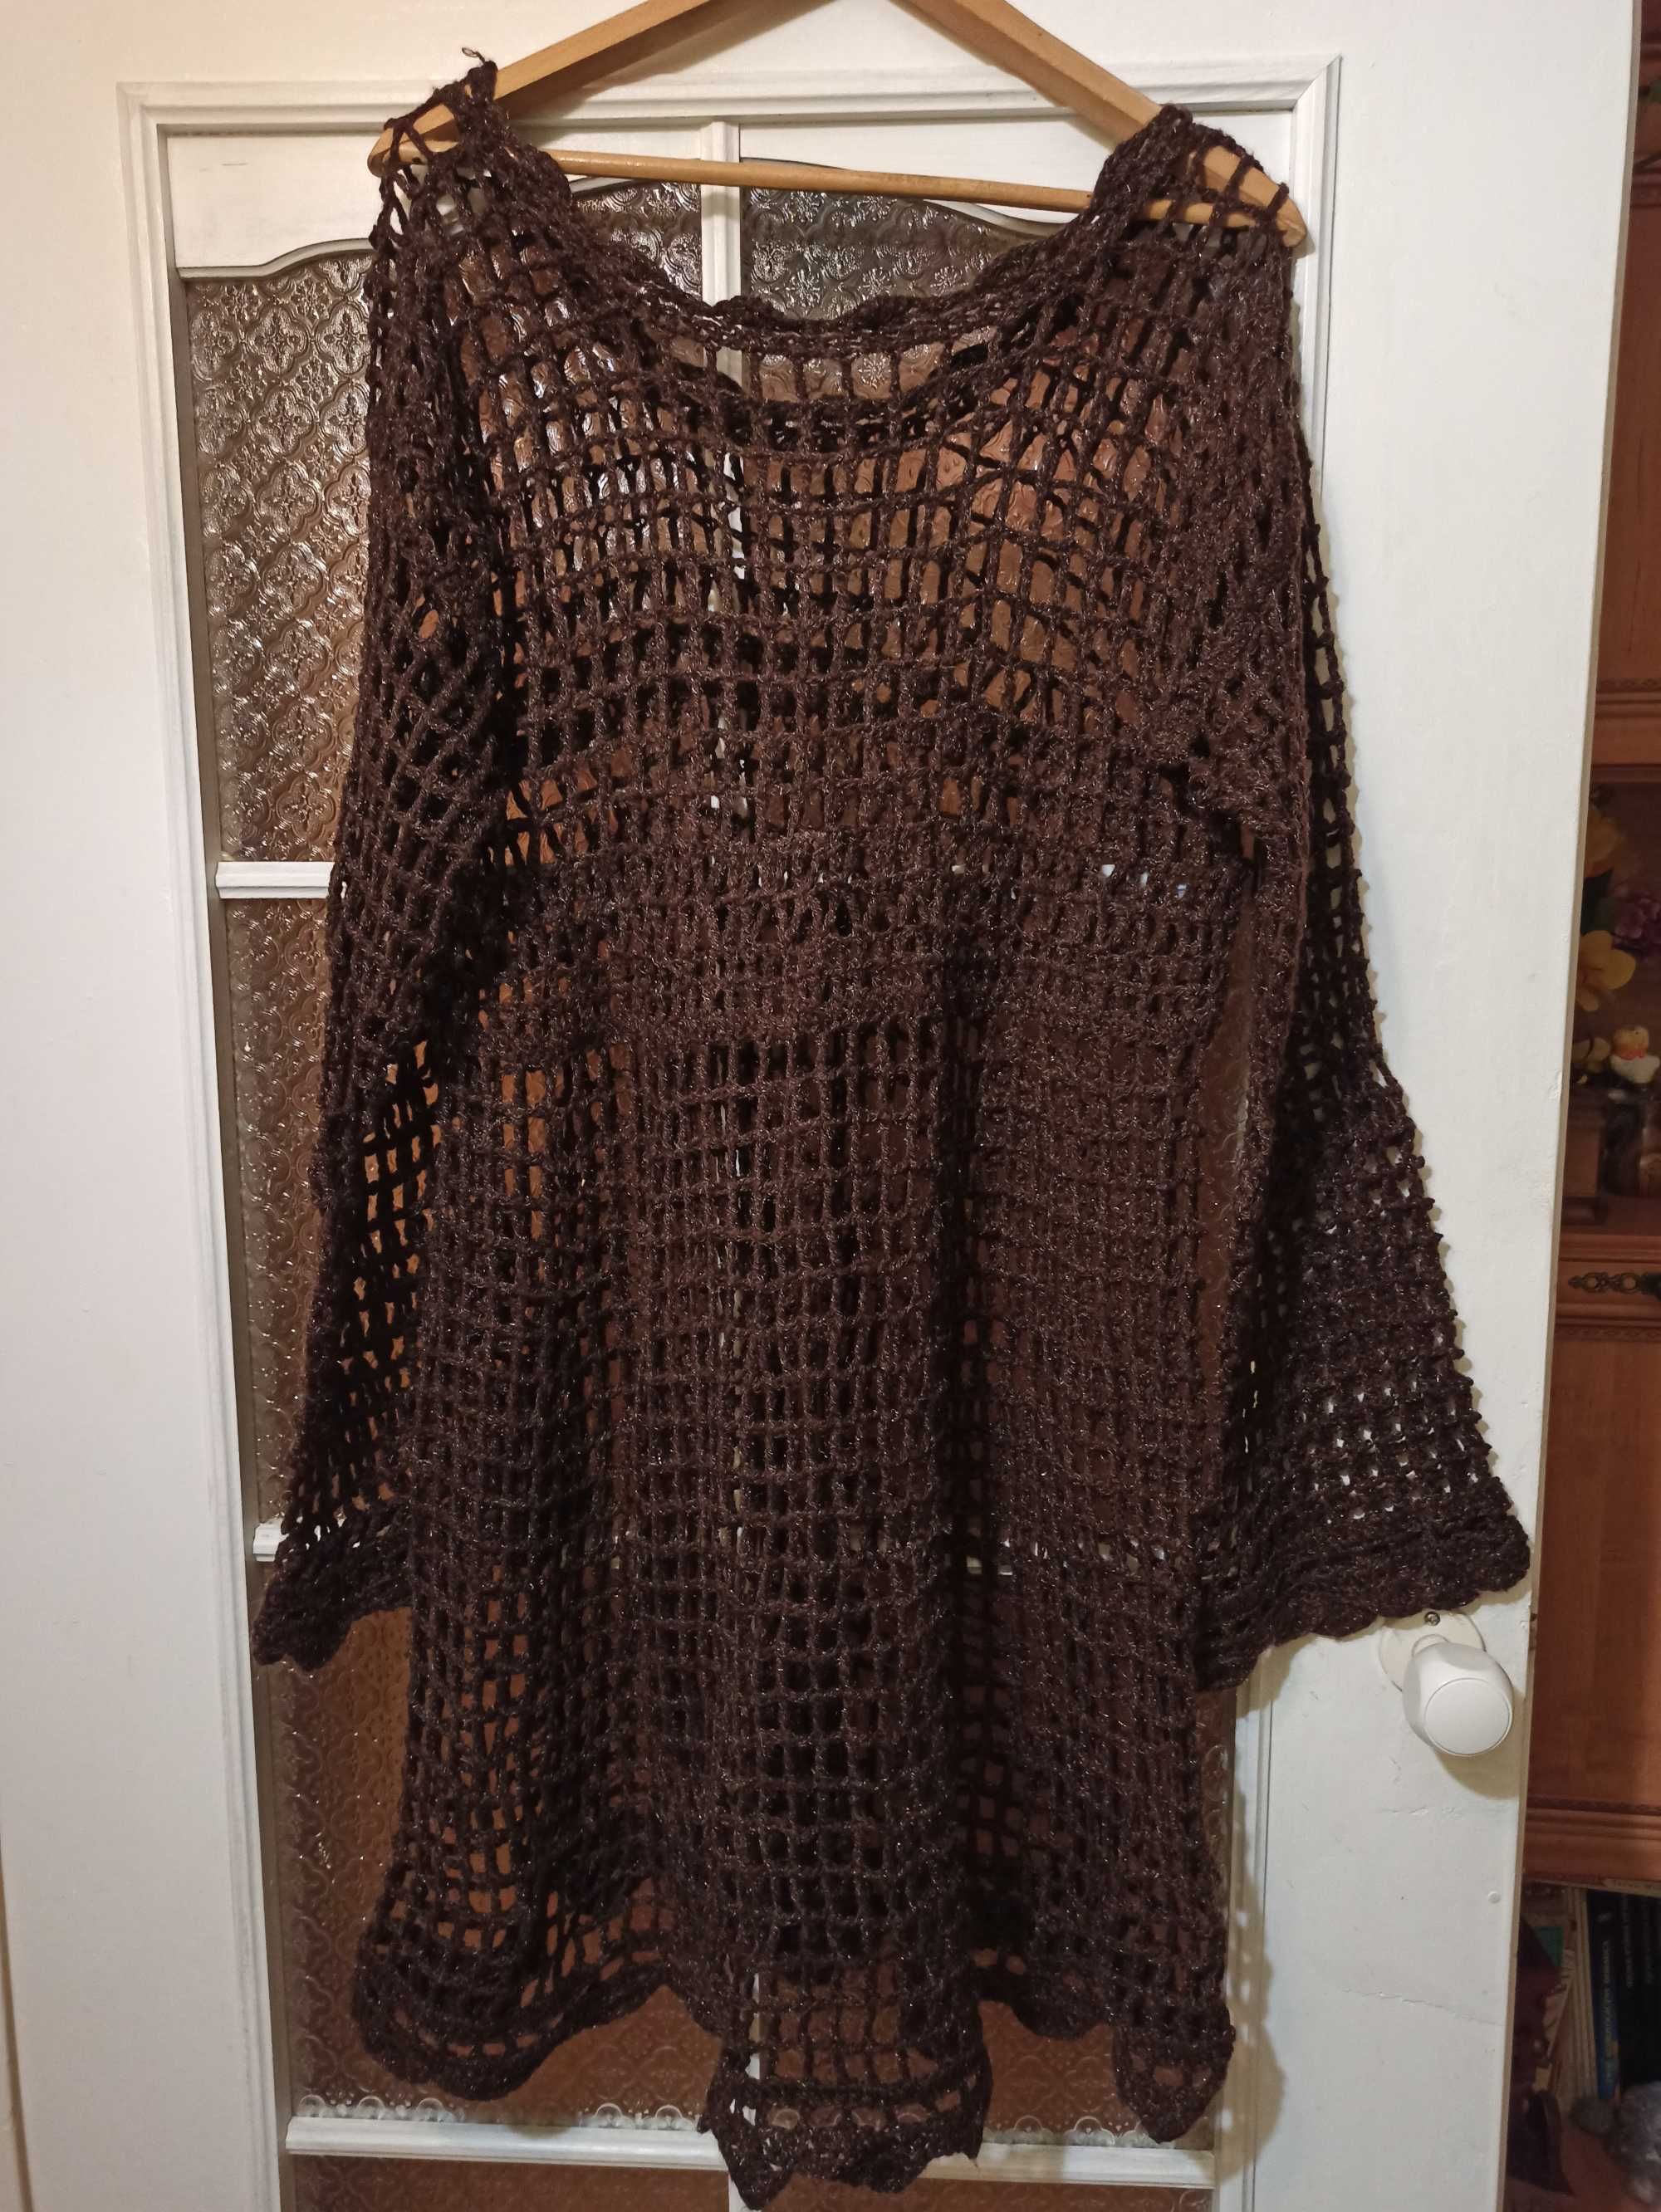 Narzutka sweterek ręcznie robiony na zamówienie rozmiar M / L / XL